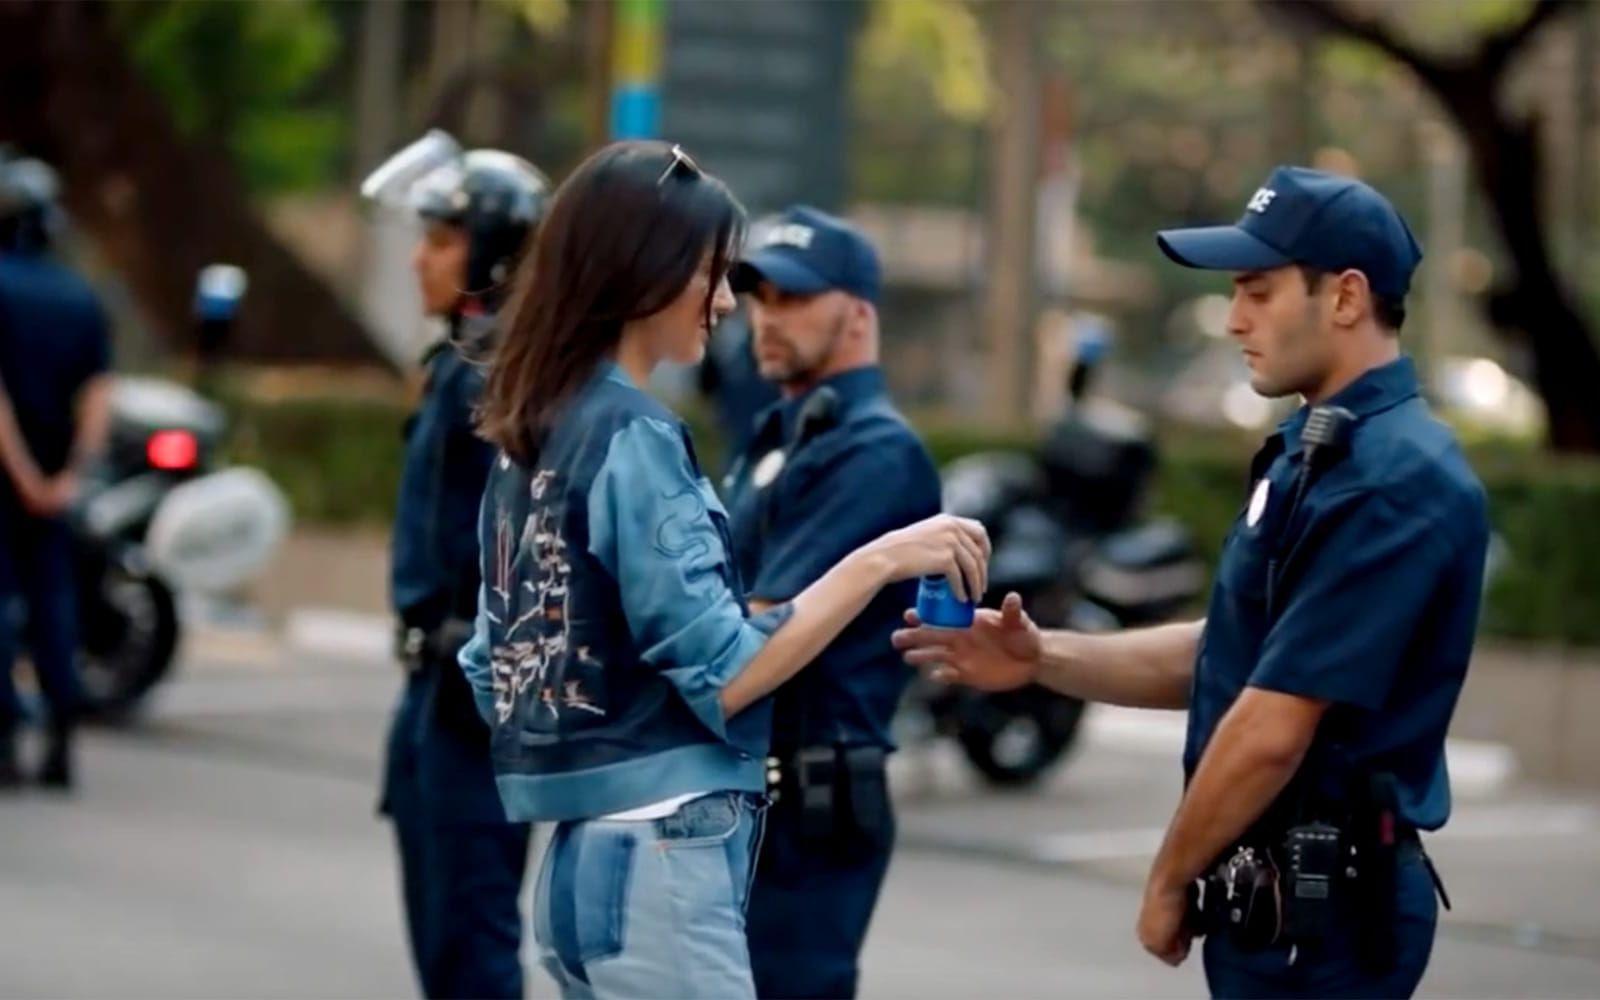 <strong>PEPSI 2017. Reklamen:</strong> Fotomodellen Kendall Jenner lämnar en plåtning för att delta i en demonstration, bjuder en kravallpolis på en Pepsi. Polisen tar en slurk och skålar med demonstranterna. <strong>Kritiken:</strong> Massiv. Pepsi anklagas för kulturell appropriering. Hånen och ilskan på sociala medier riktas mot att läskjätten bagatelliserar viktiga demokratiska frågor. <strong>Efterspelet:</strong> Pepsi försvarar reklamen, men när reaktionerna blir tillräckligt starka drar man tillbaka klippet och ber om ursäkt: ”Uppenbarligen gjorde vi ett misstag och ber därför om ursäkt.” Foto: Skärmbild/Pepsi